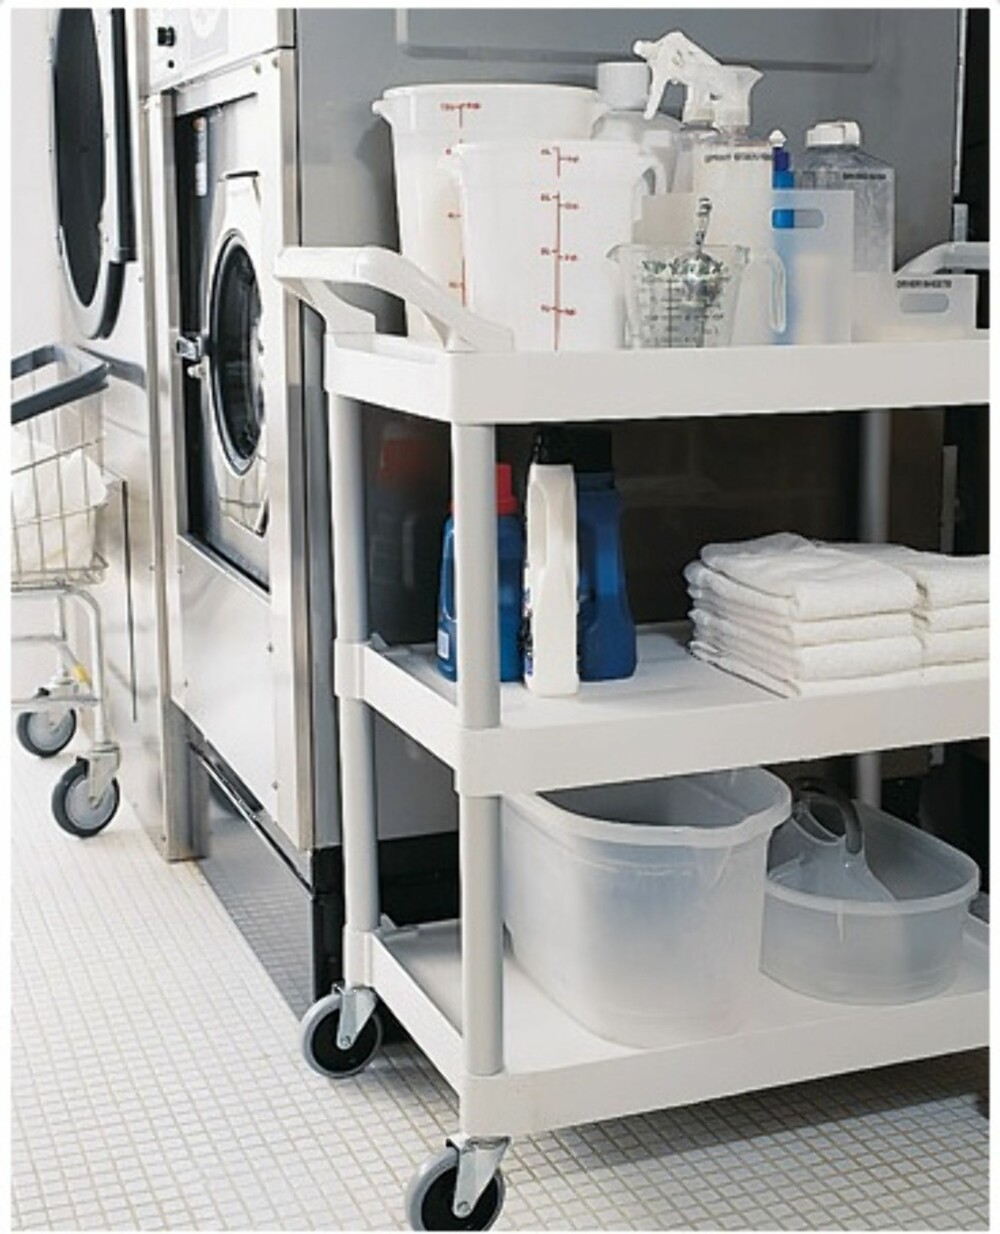 TRILLETRALL: Her har man oppbevart vaskemiddel og annet vaskeutstyr på en praktisk tralle med hjul.